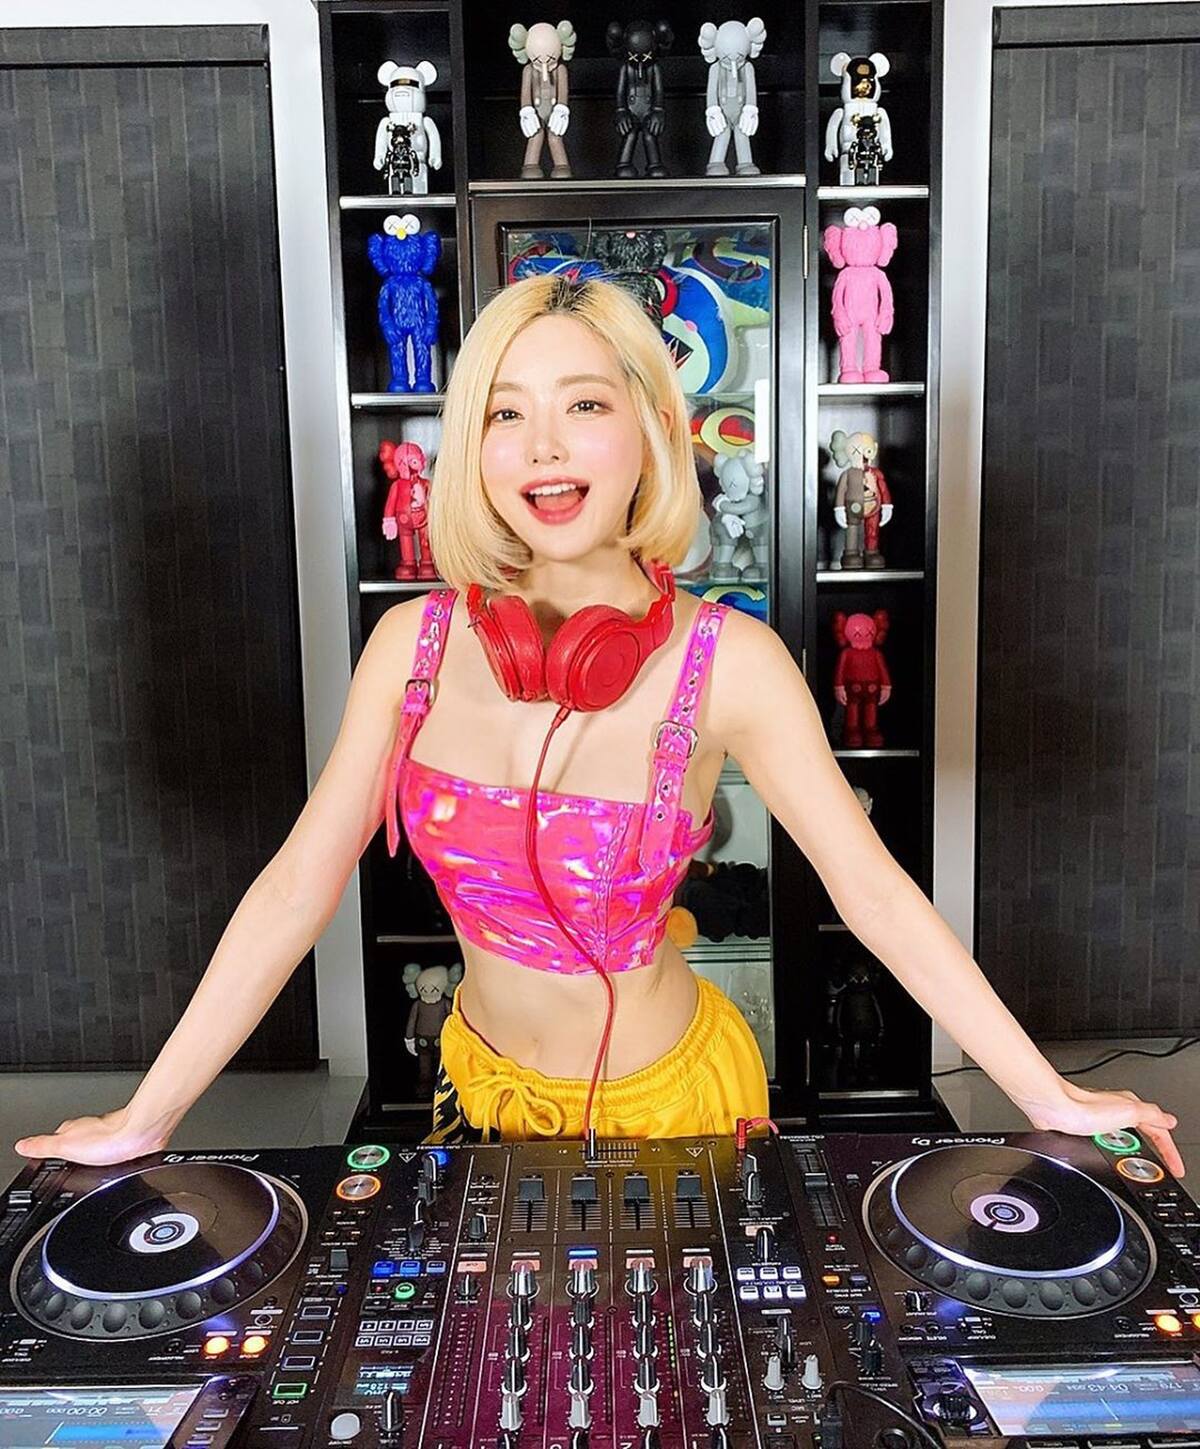 Nữ DJ nổi tiếng với phong cách nóng bỏng bậc nhất giới DJ.